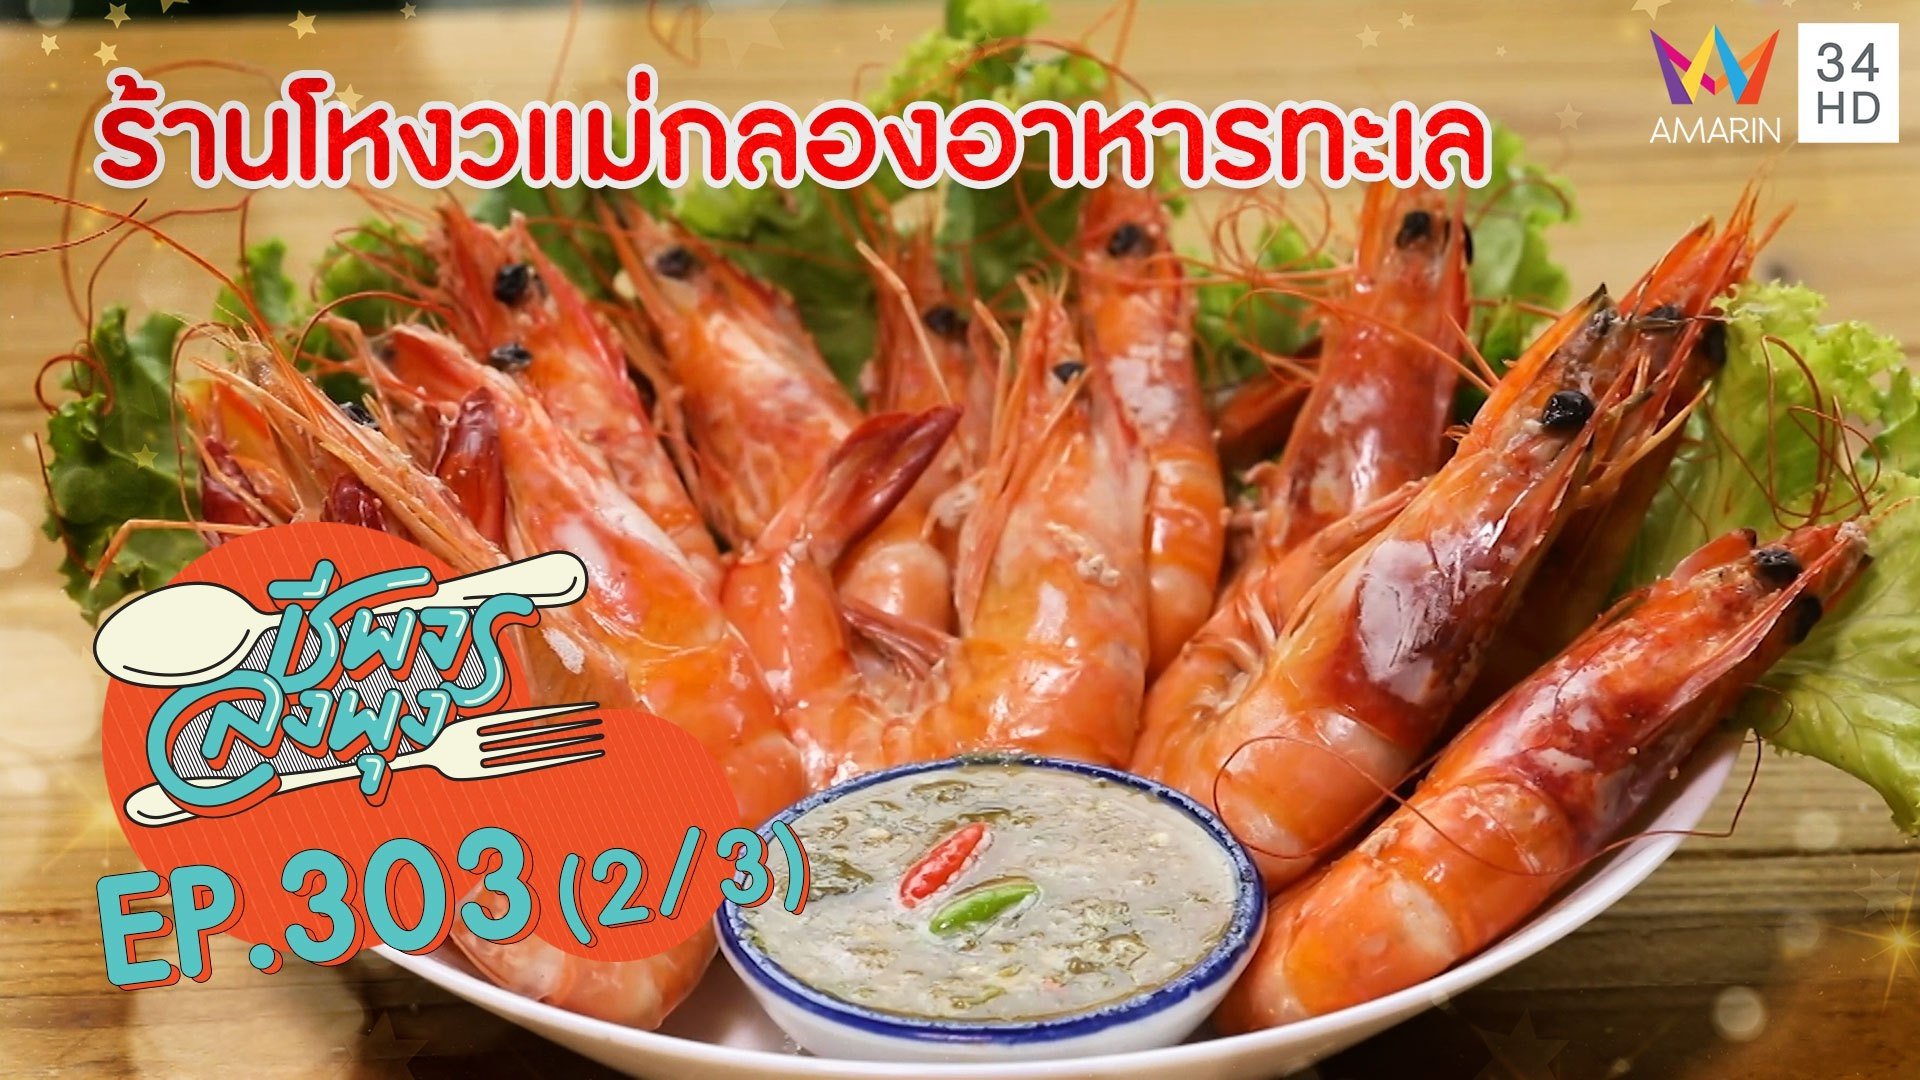 อร่อยฟิน อาหารทะเลสดๆ จากแม่กลอง @ ร้านโหงวแม่กลองอาหารทะเล | ชีพจรลงพุง | 13 มิ.ย. 64 (2/3) | AMARIN TVHD34